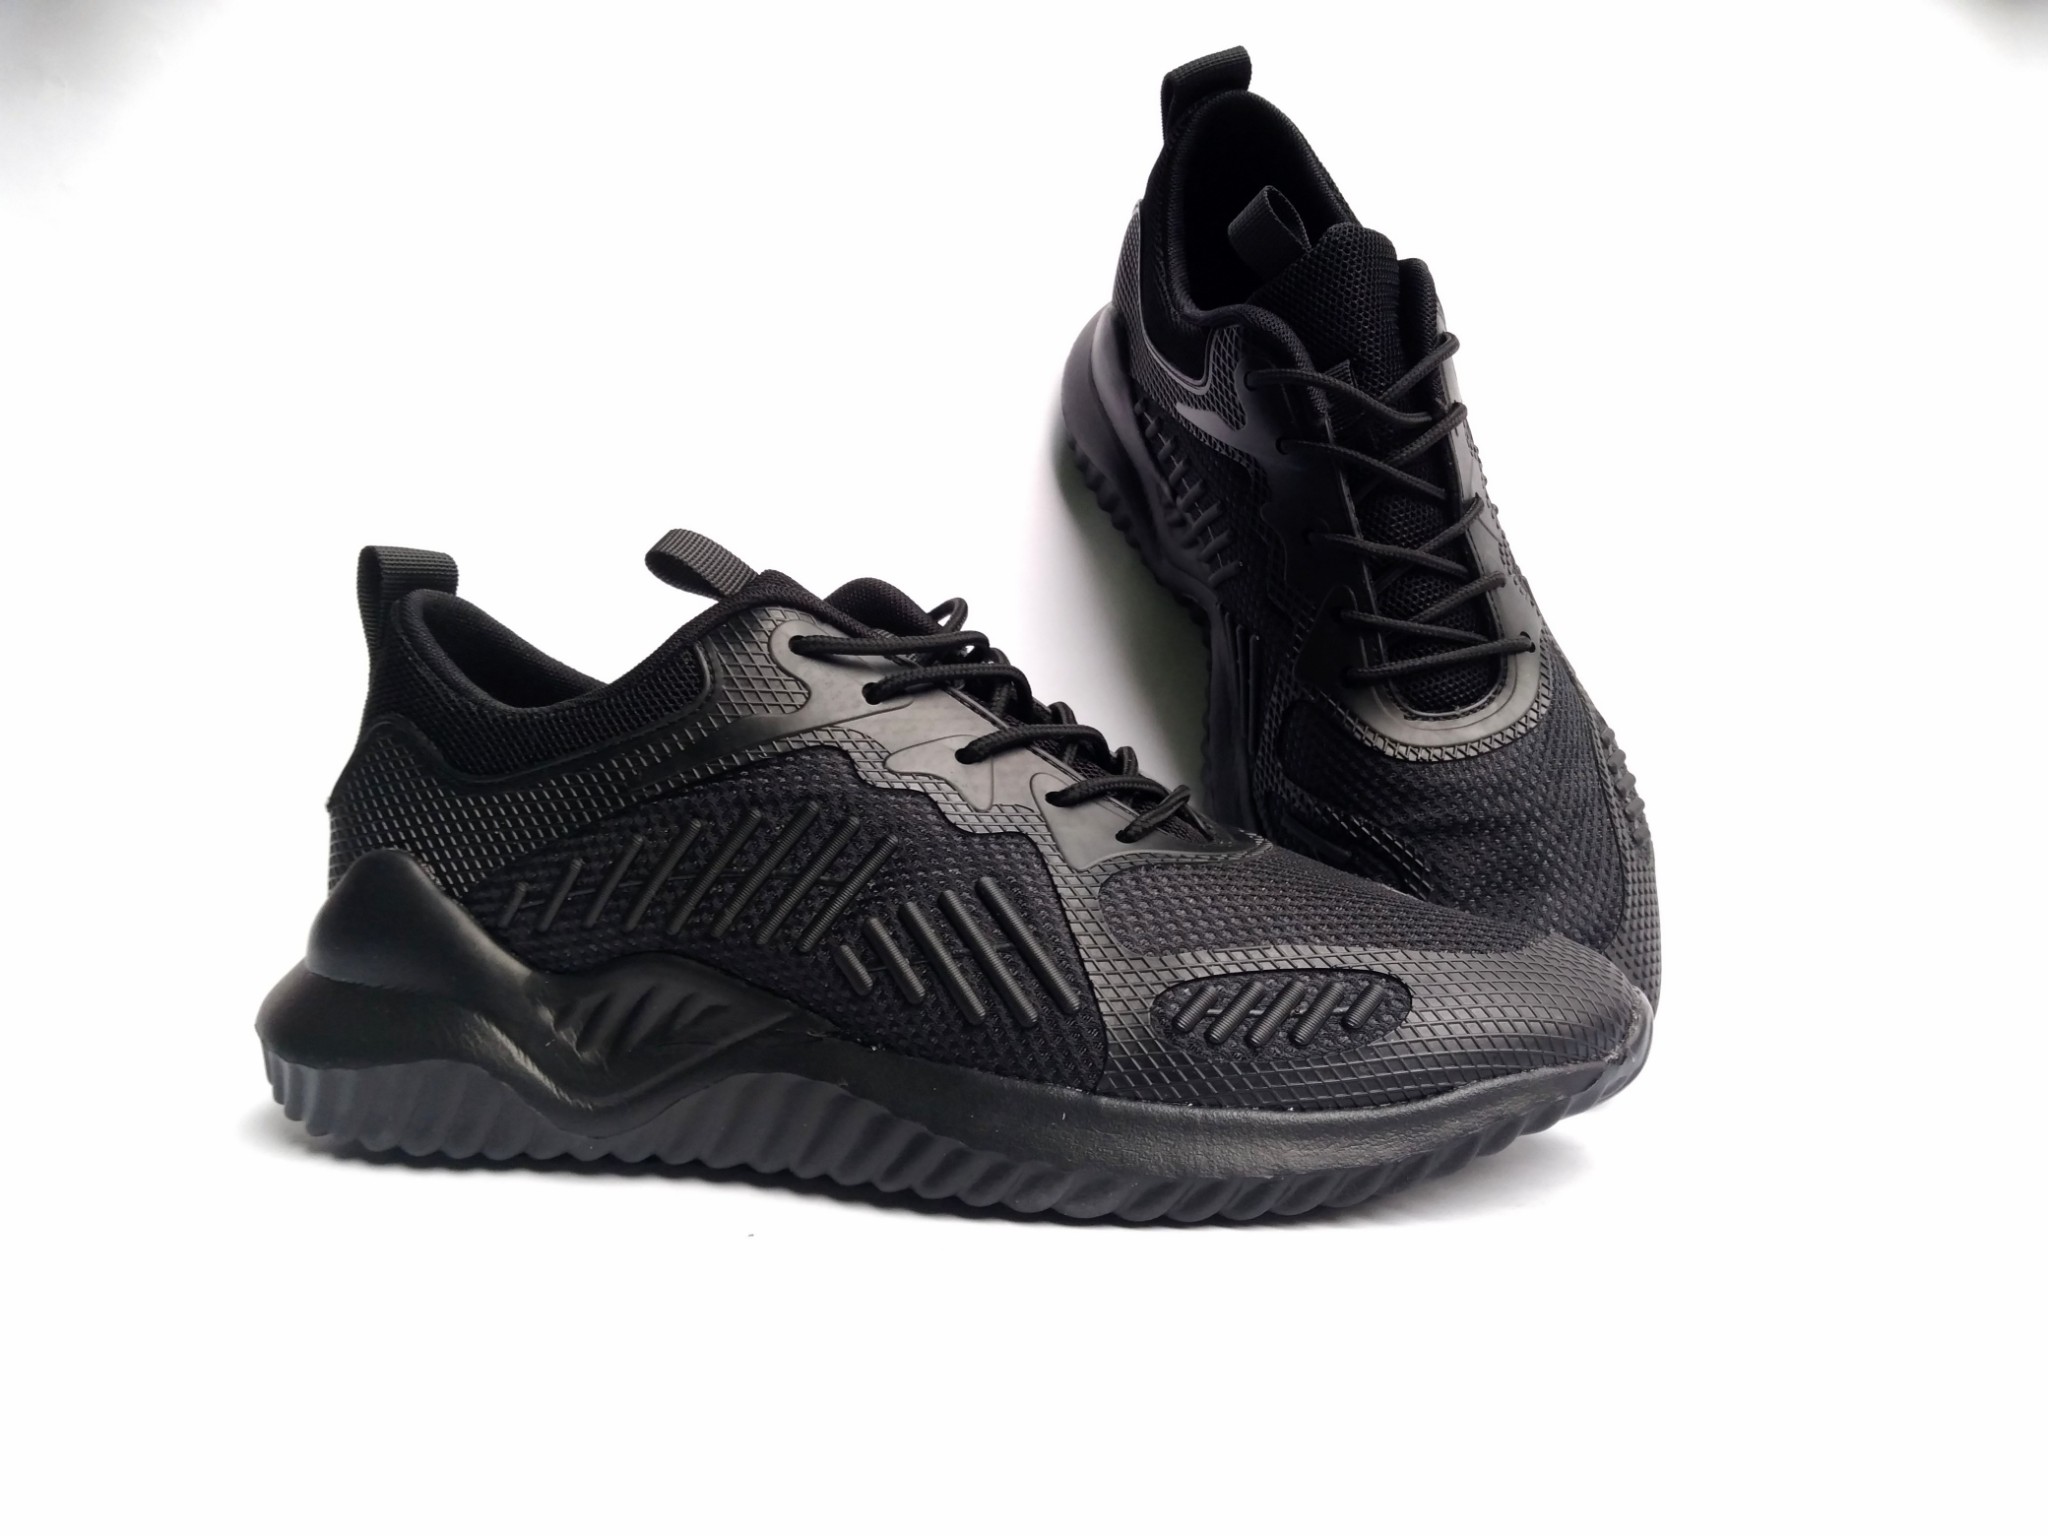 giày sneaker full black big size 11us 12us 13us 14us